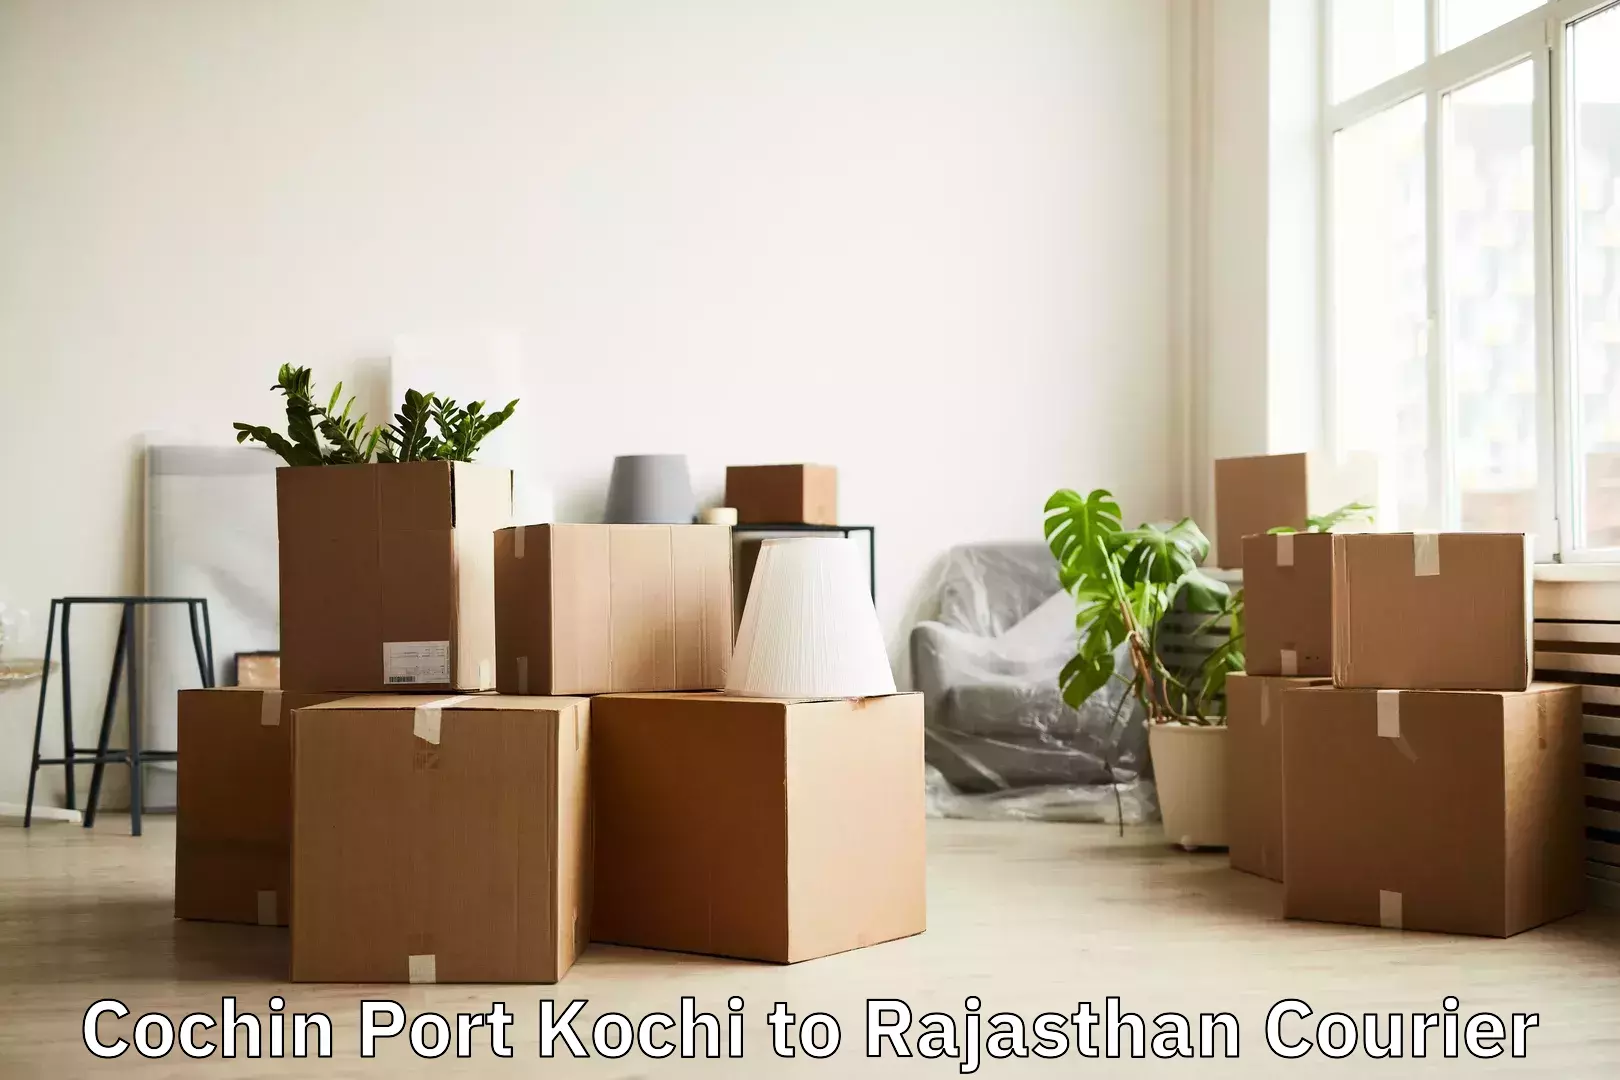 Baggage delivery optimization Cochin Port Kochi to Morkheri